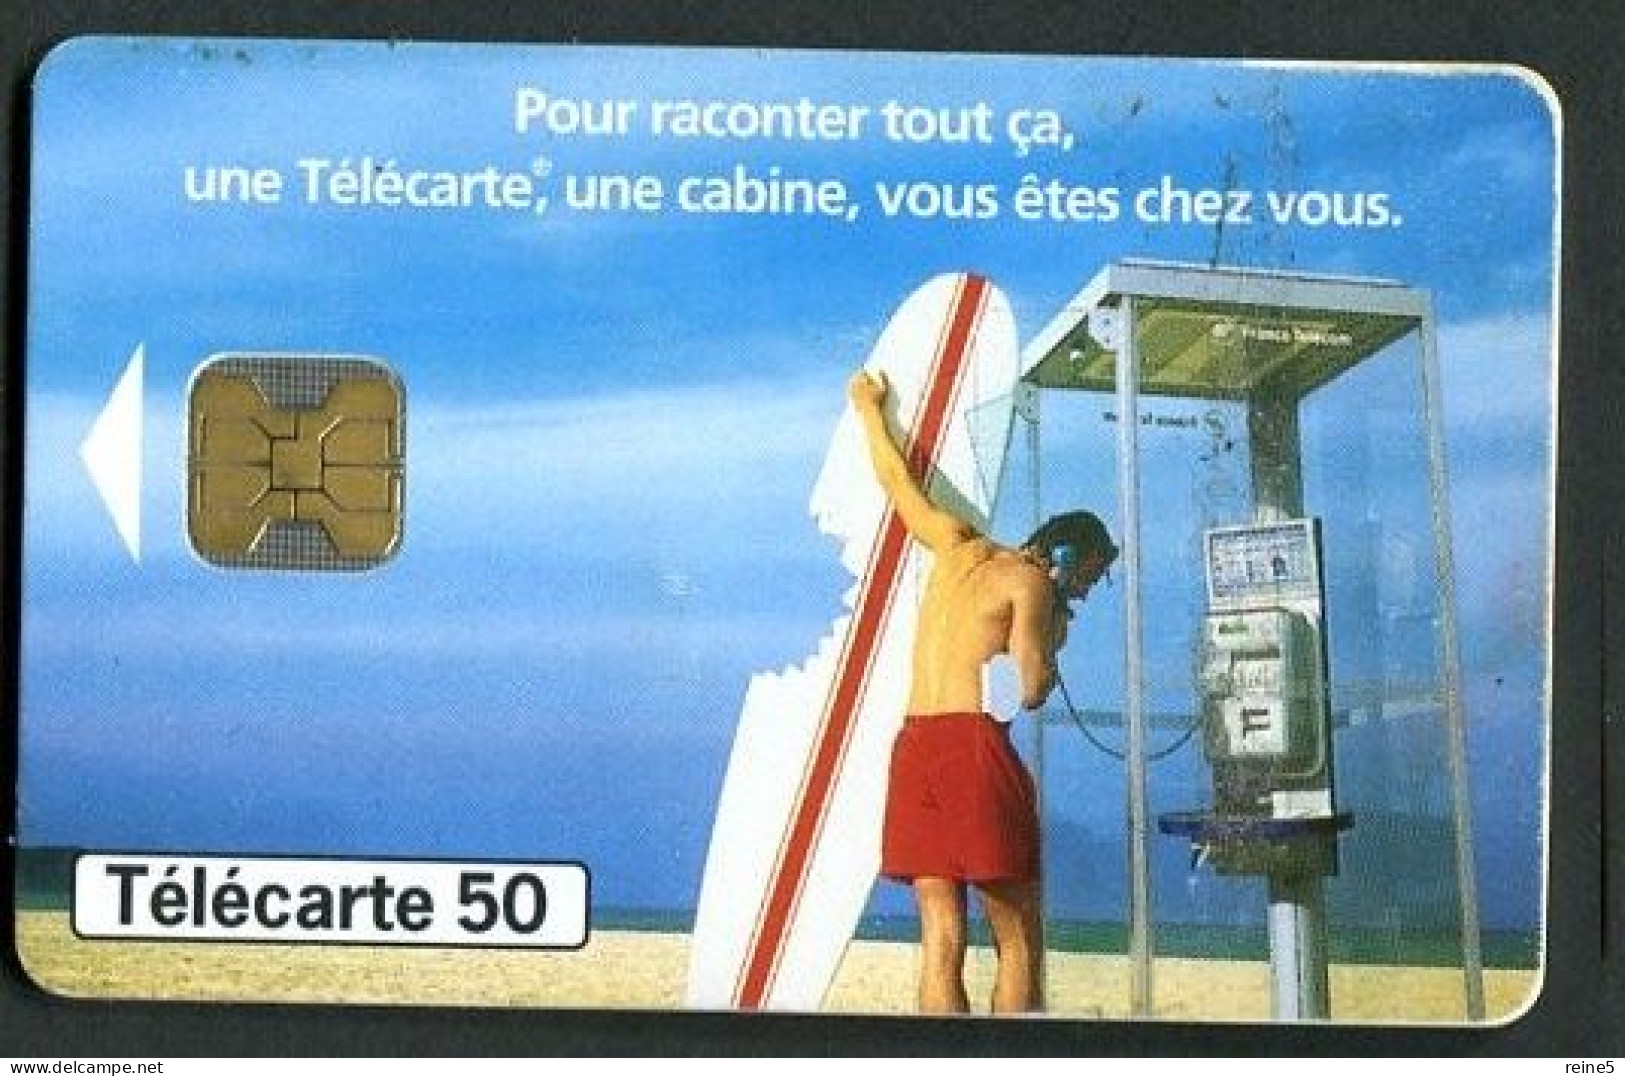 TELECARTE De 7/1998 > LE VELIPLANCHISTE PLANCHE GRIGNOTEE Par UN REQUIN CABINE TELEPHONE -TRES BON ETAT -REF5FS0-A5-744D - 1998